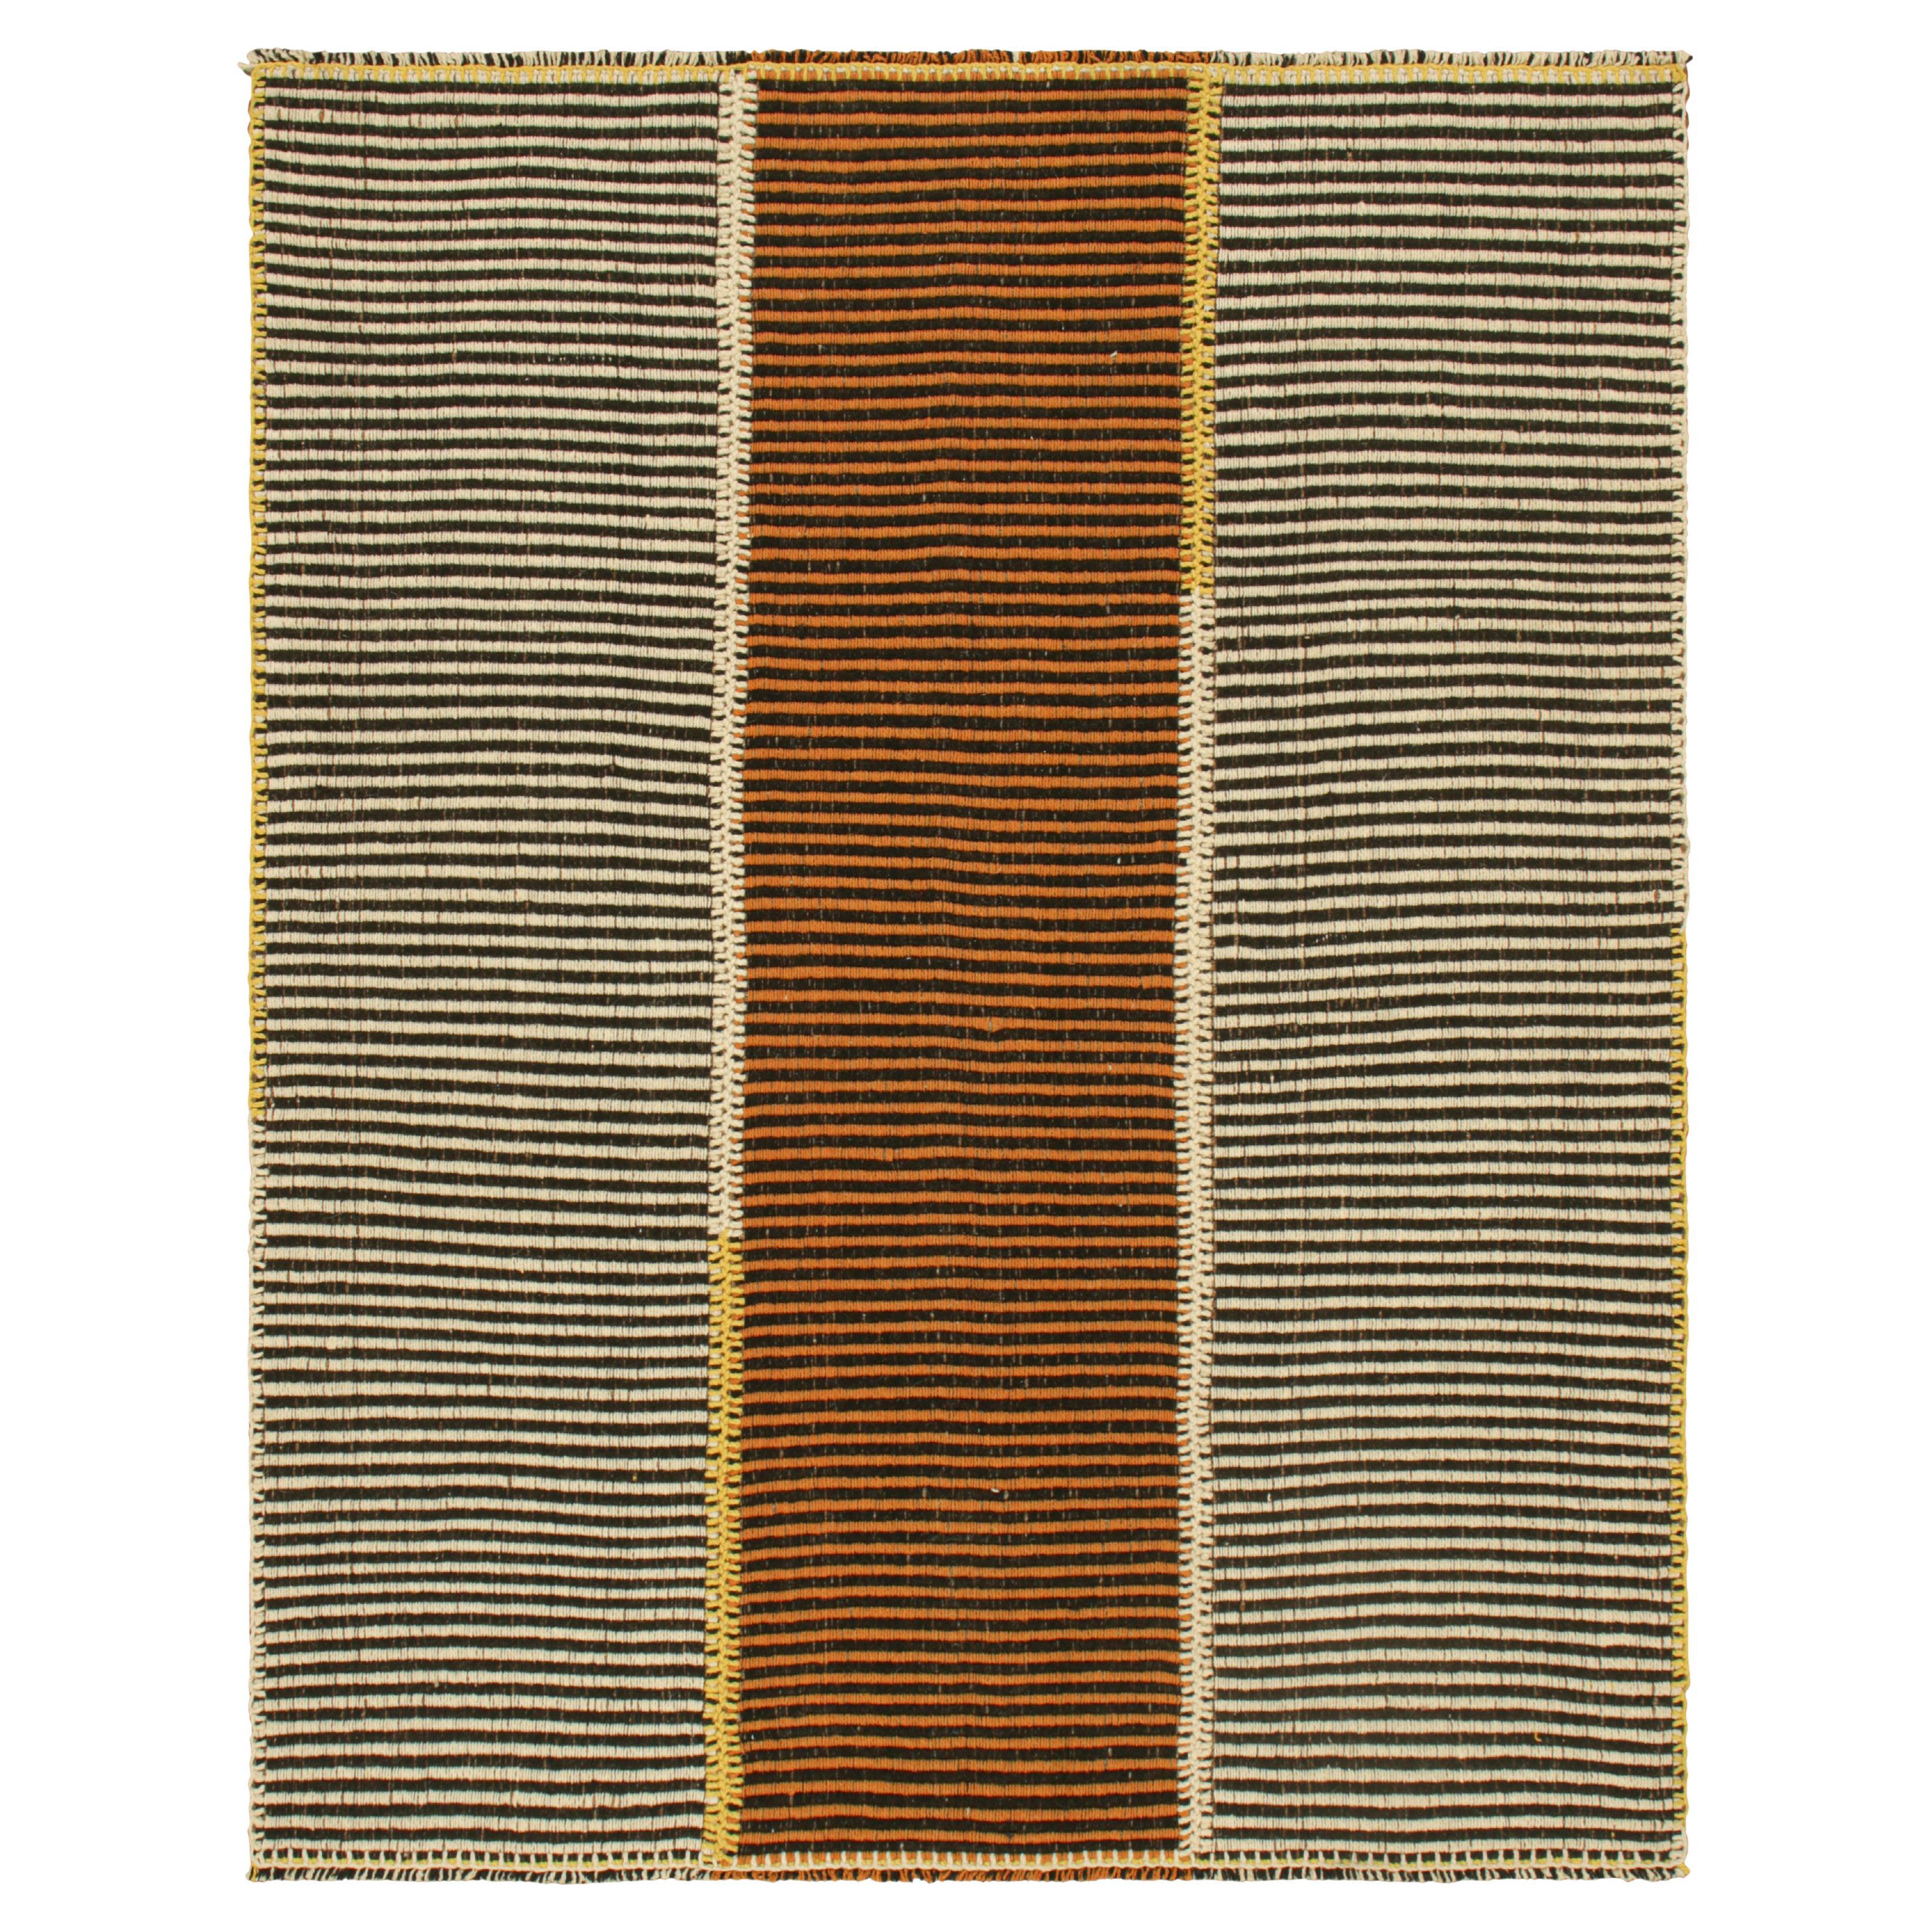 Rug & Kilim's Contemporary Kilim in Beige-Brown and Orange Textural Stripes (Kilim contemporain à rayures texturées beige, marron et orange)